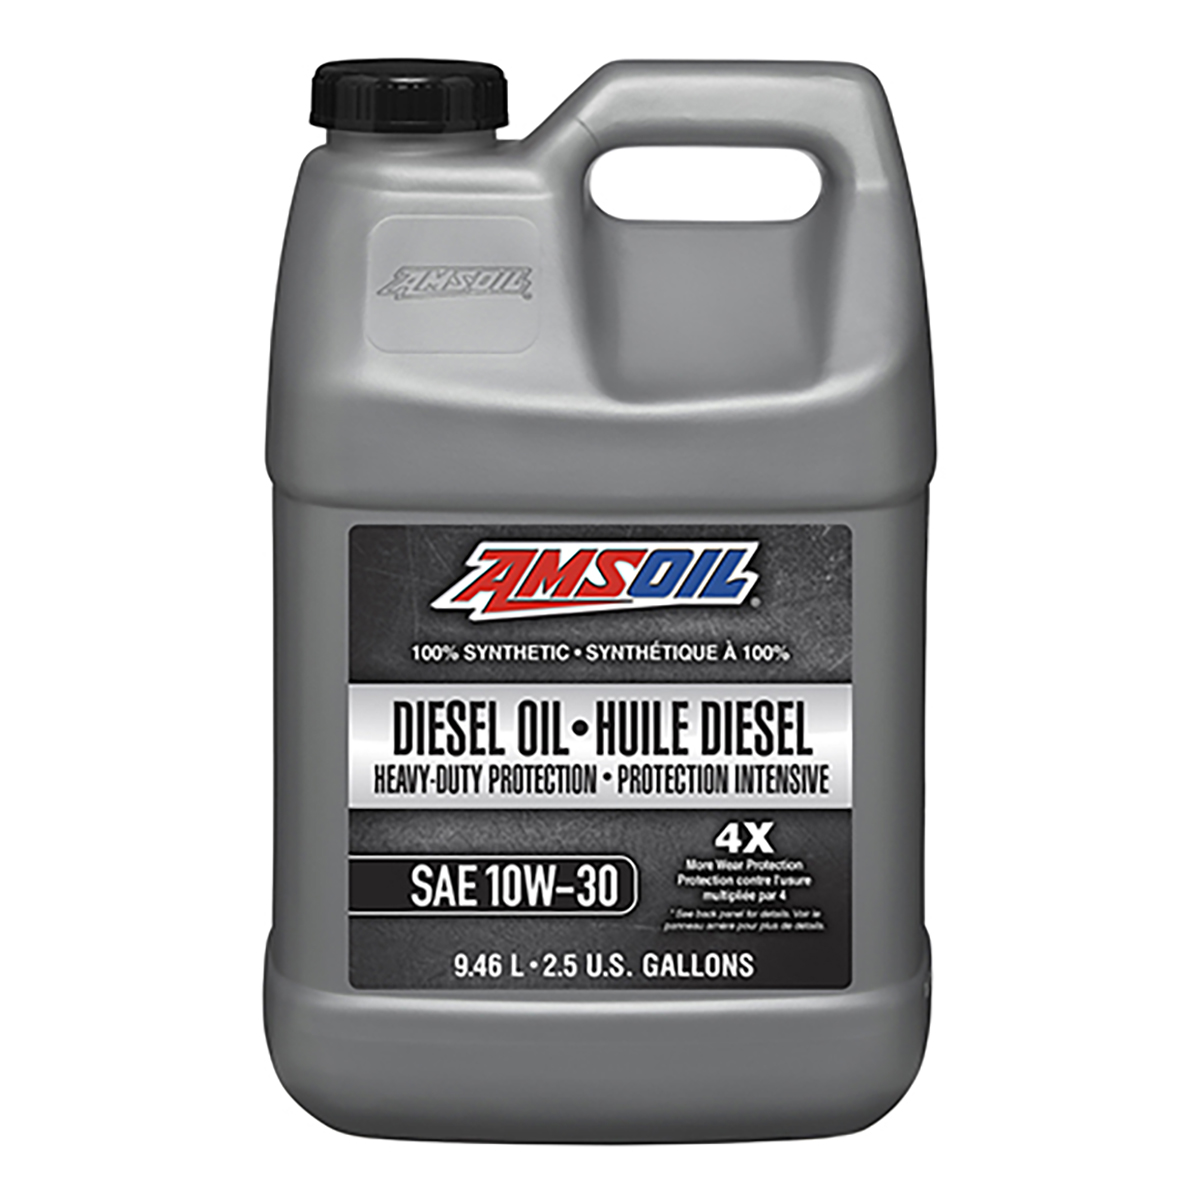 Heavy-Duty Synthetic Diesel Oil 10W-30, 2.5g	diesel-motor-oil